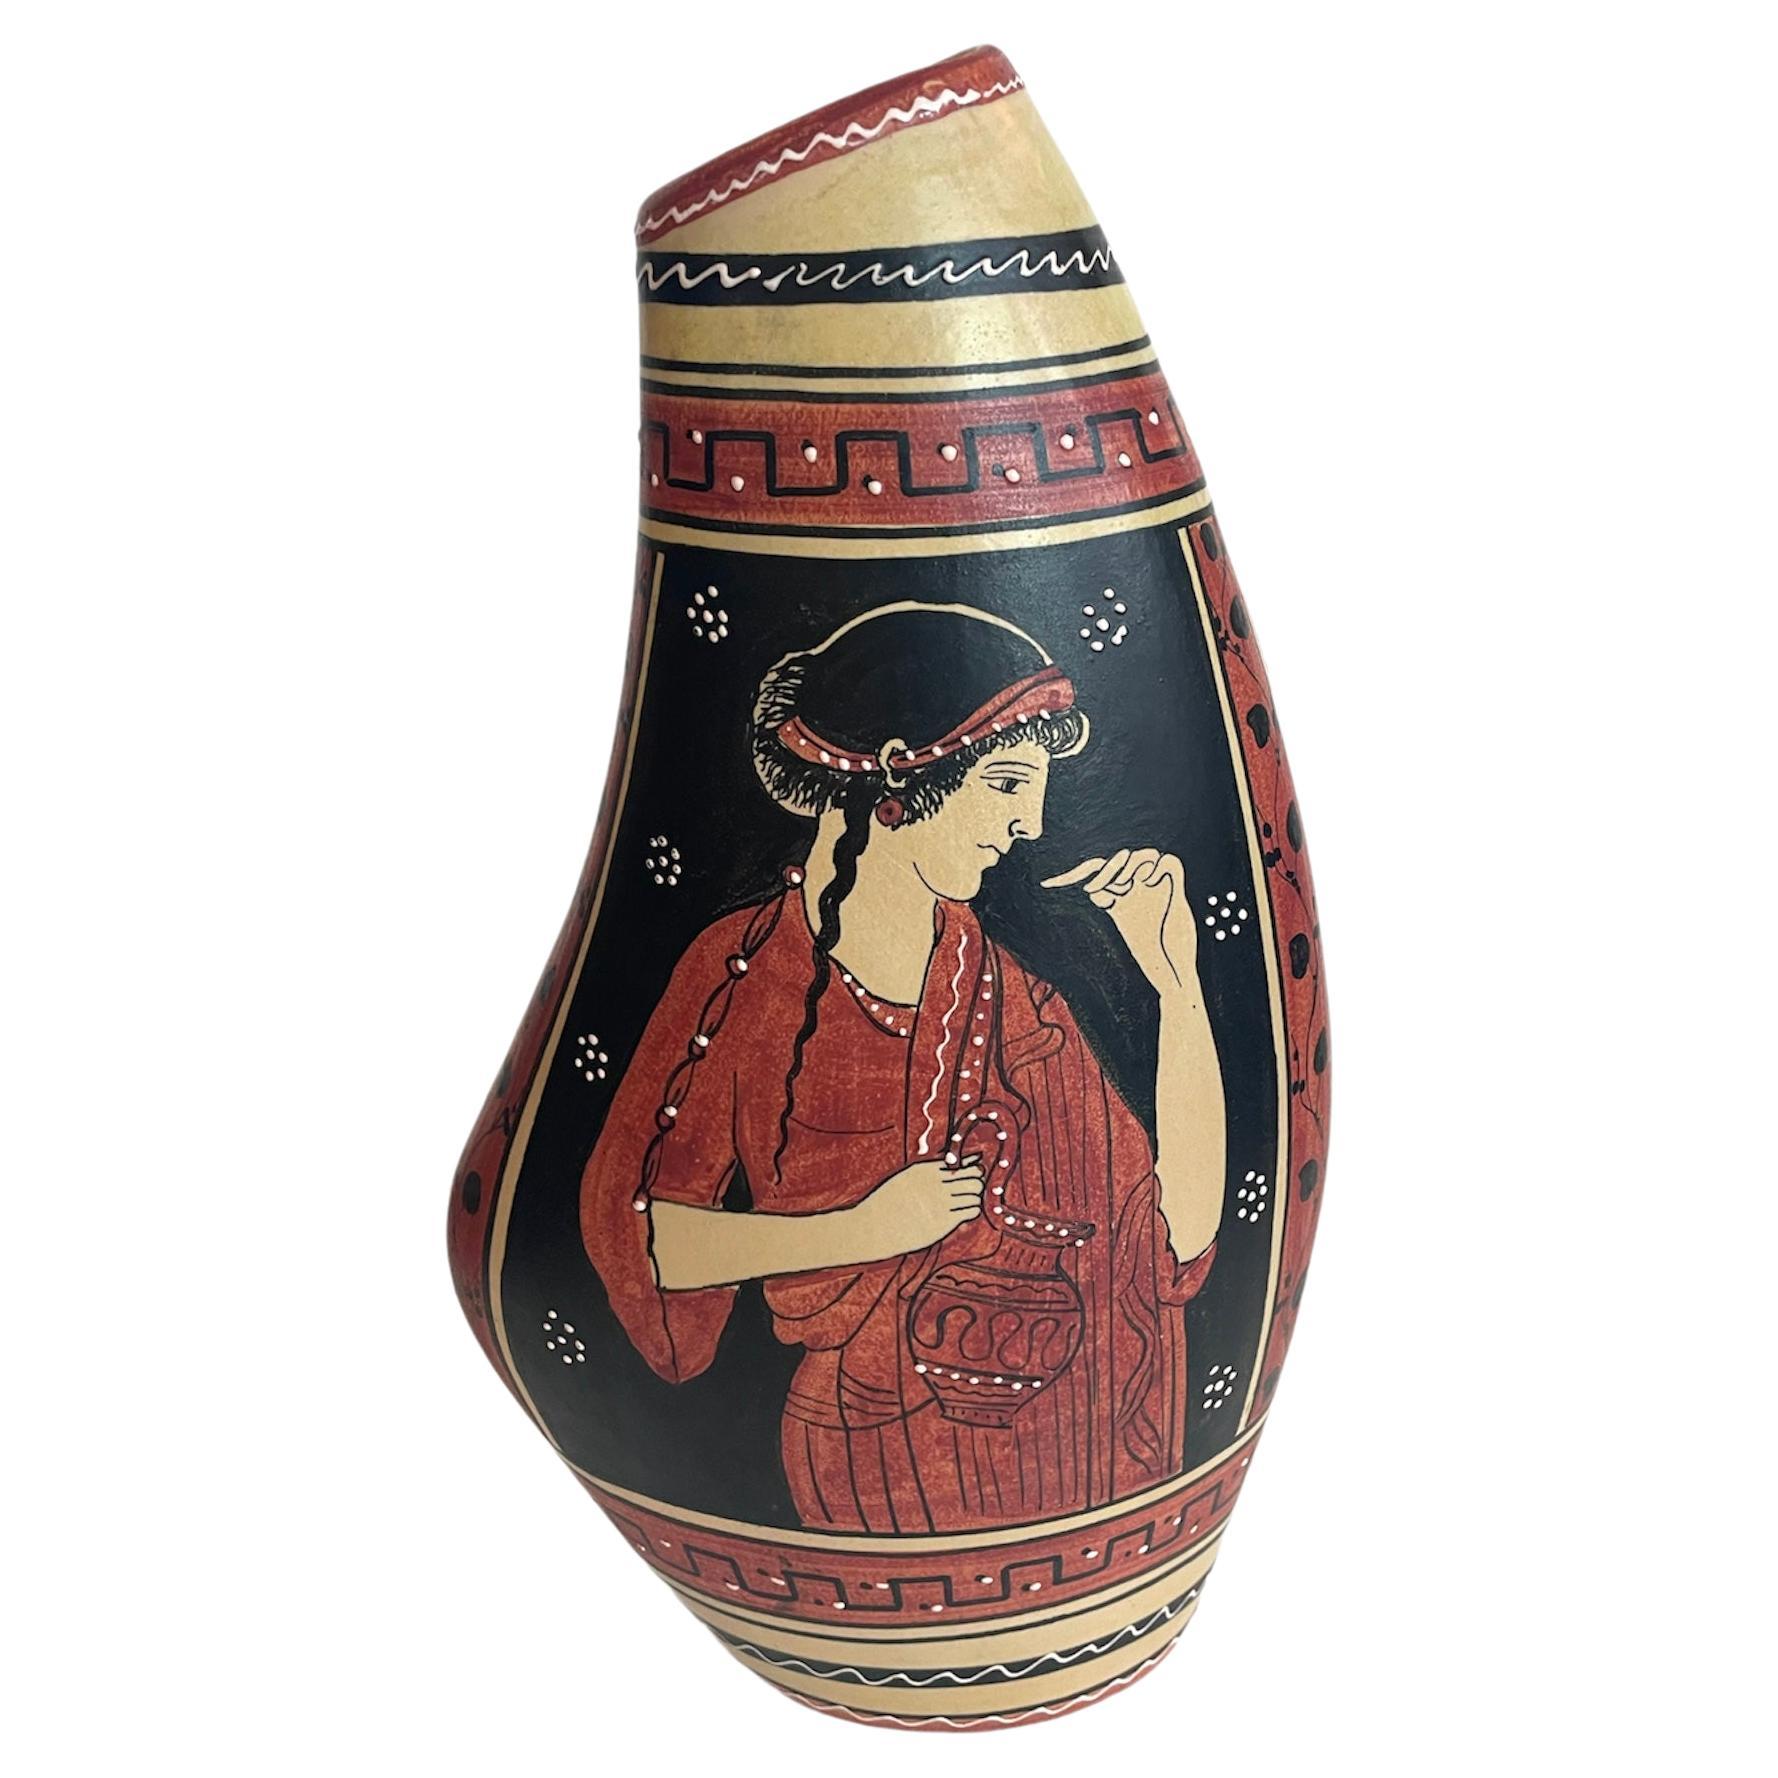 Signed Pottery Vase by "Volpi" Dervata For Sale